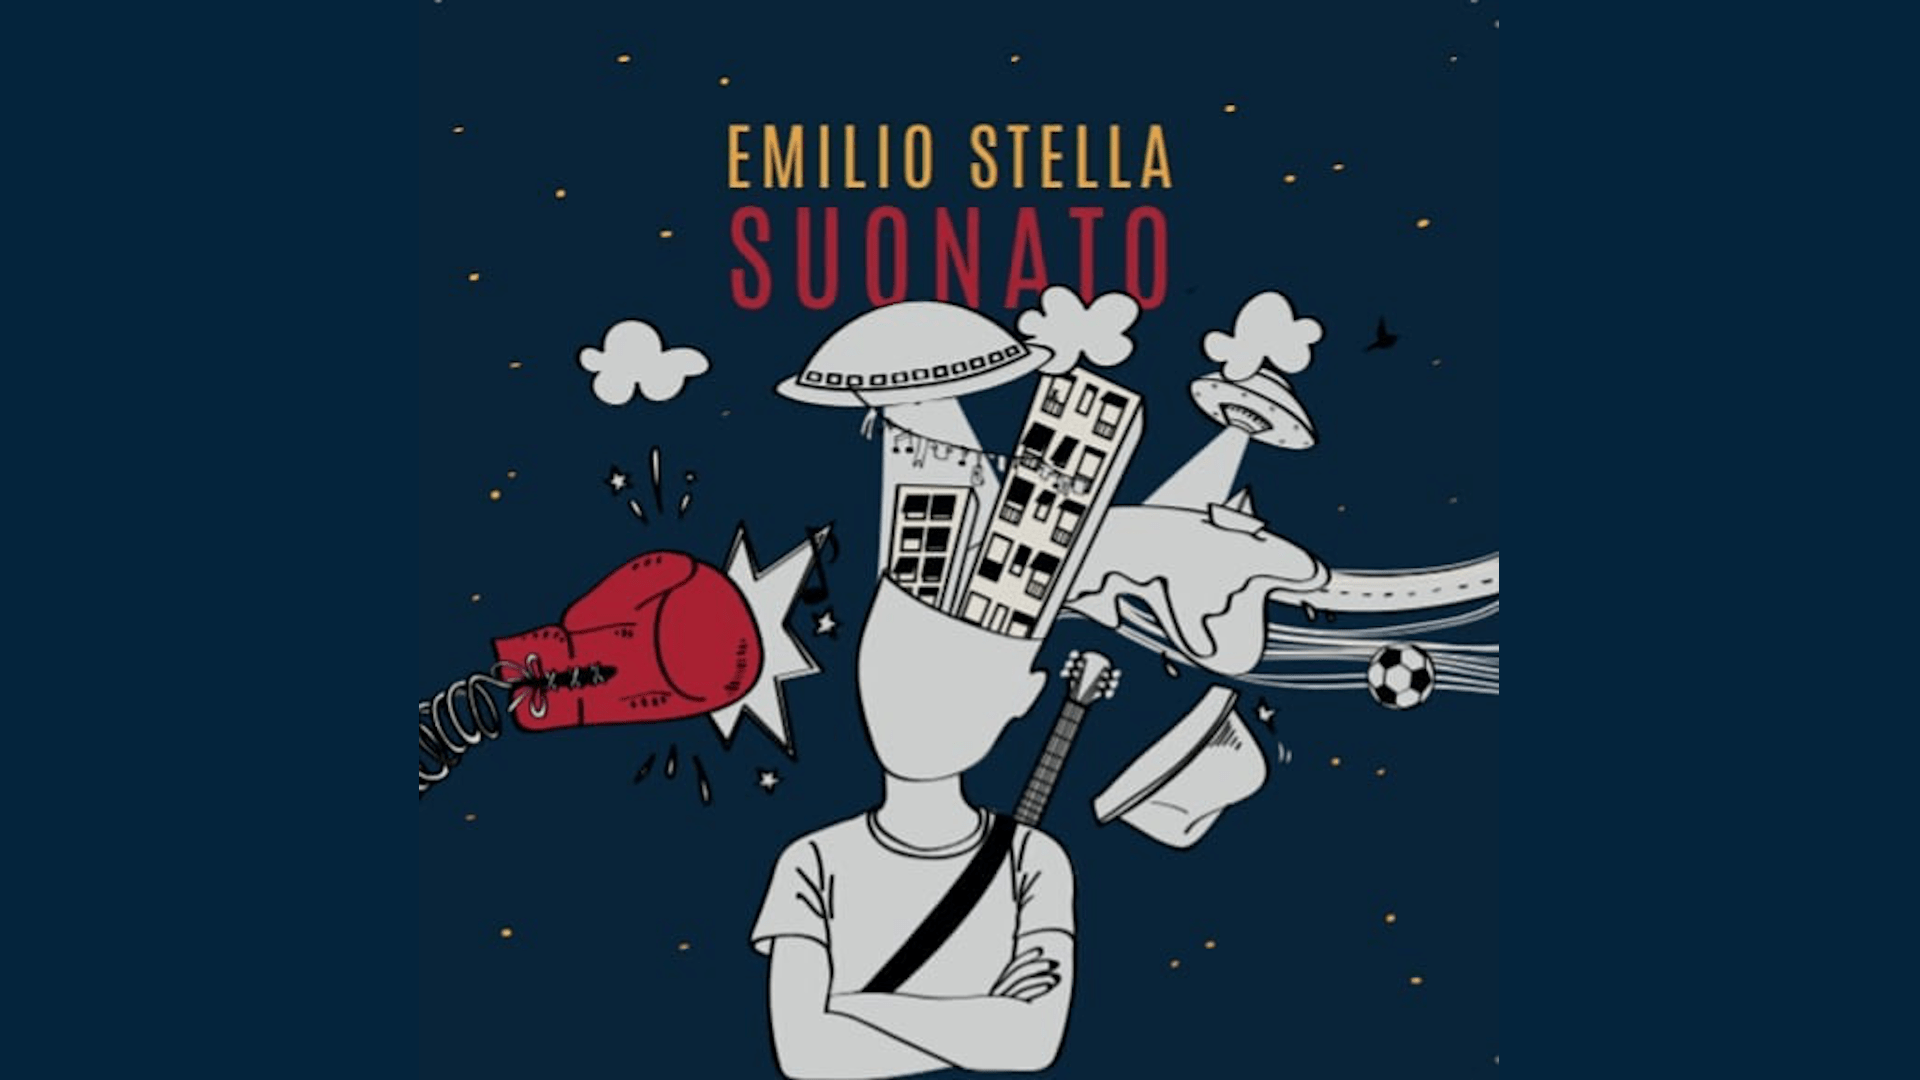 EMILIO STELLA SUONATO